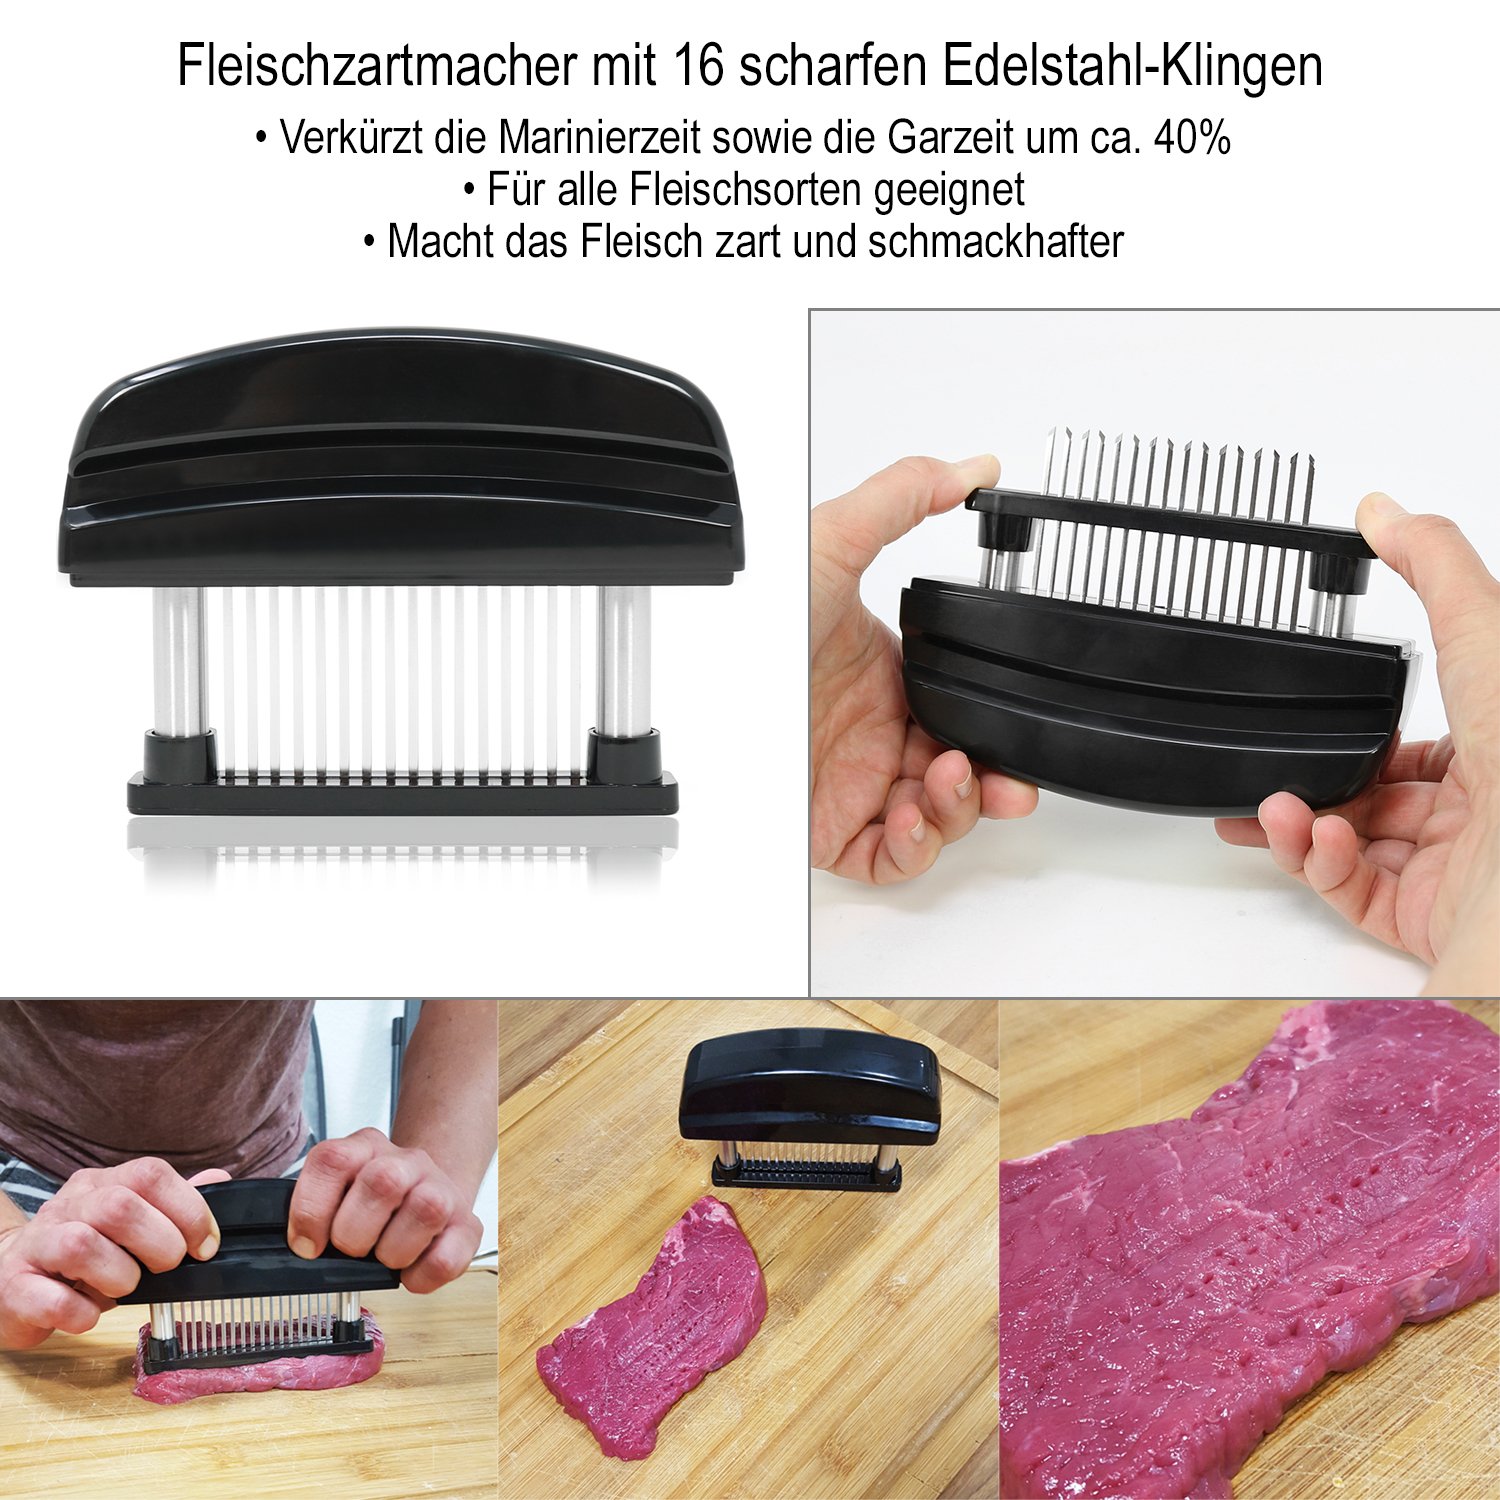 2x XL Edelstahl Klingen Fleischklopfer Fleischstecher Steaker Schwarz & Weiß